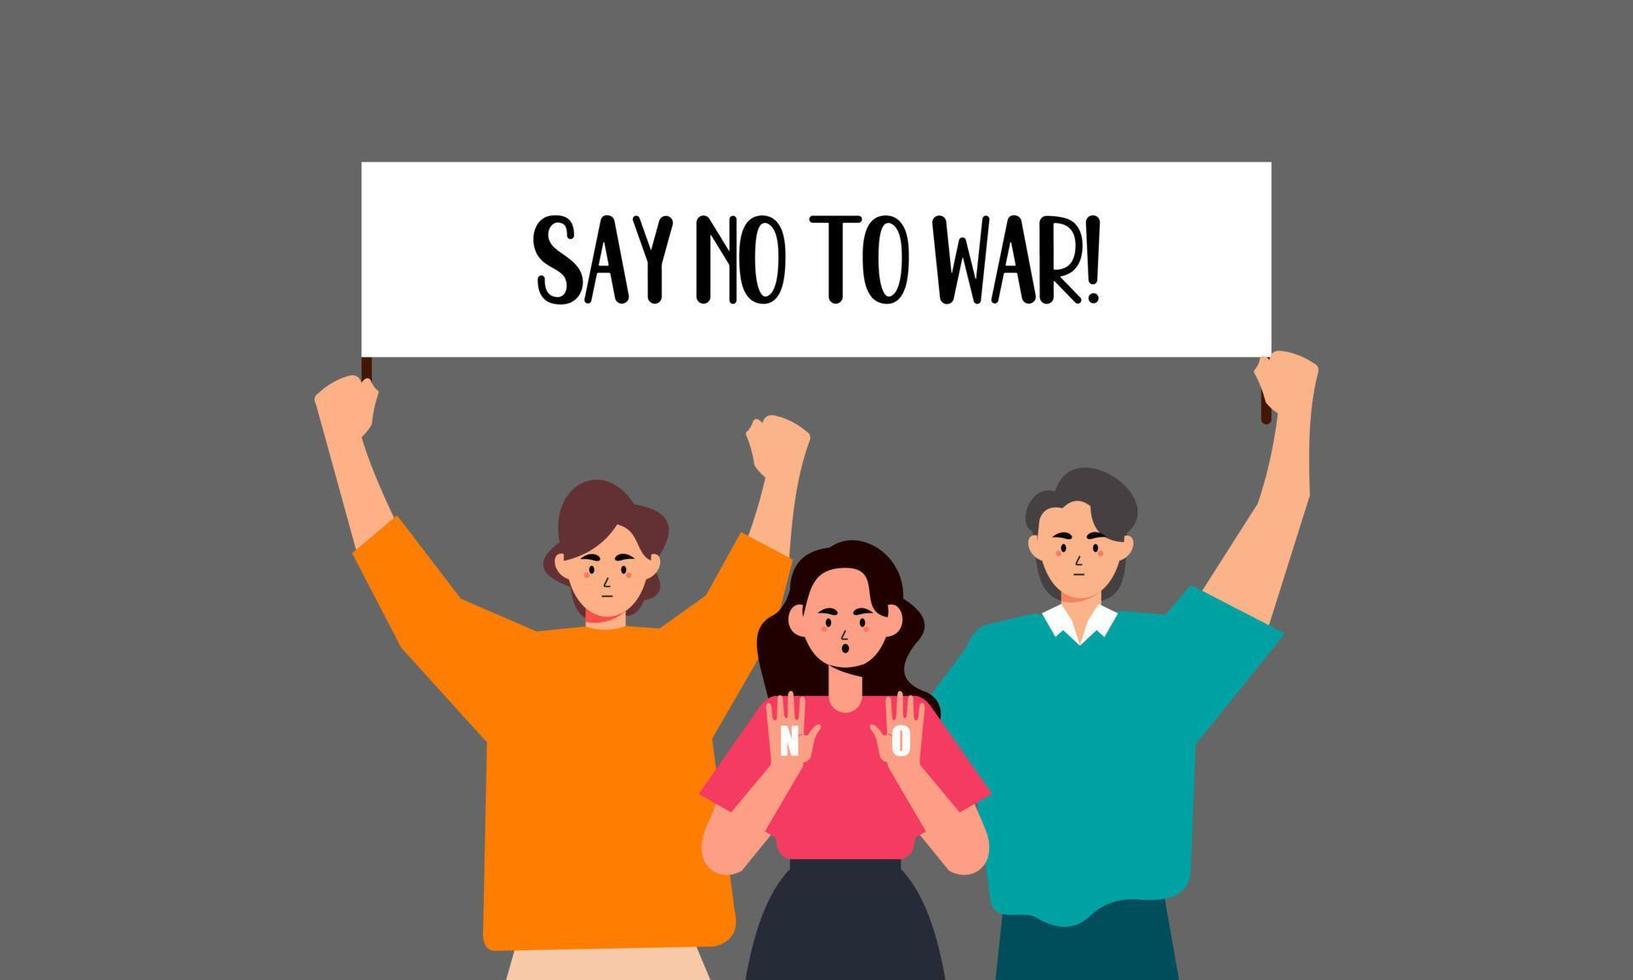 mensen zijn tegen oorlog. zeg nee tegen oorlog. vrede aan de wereld illustratie vector